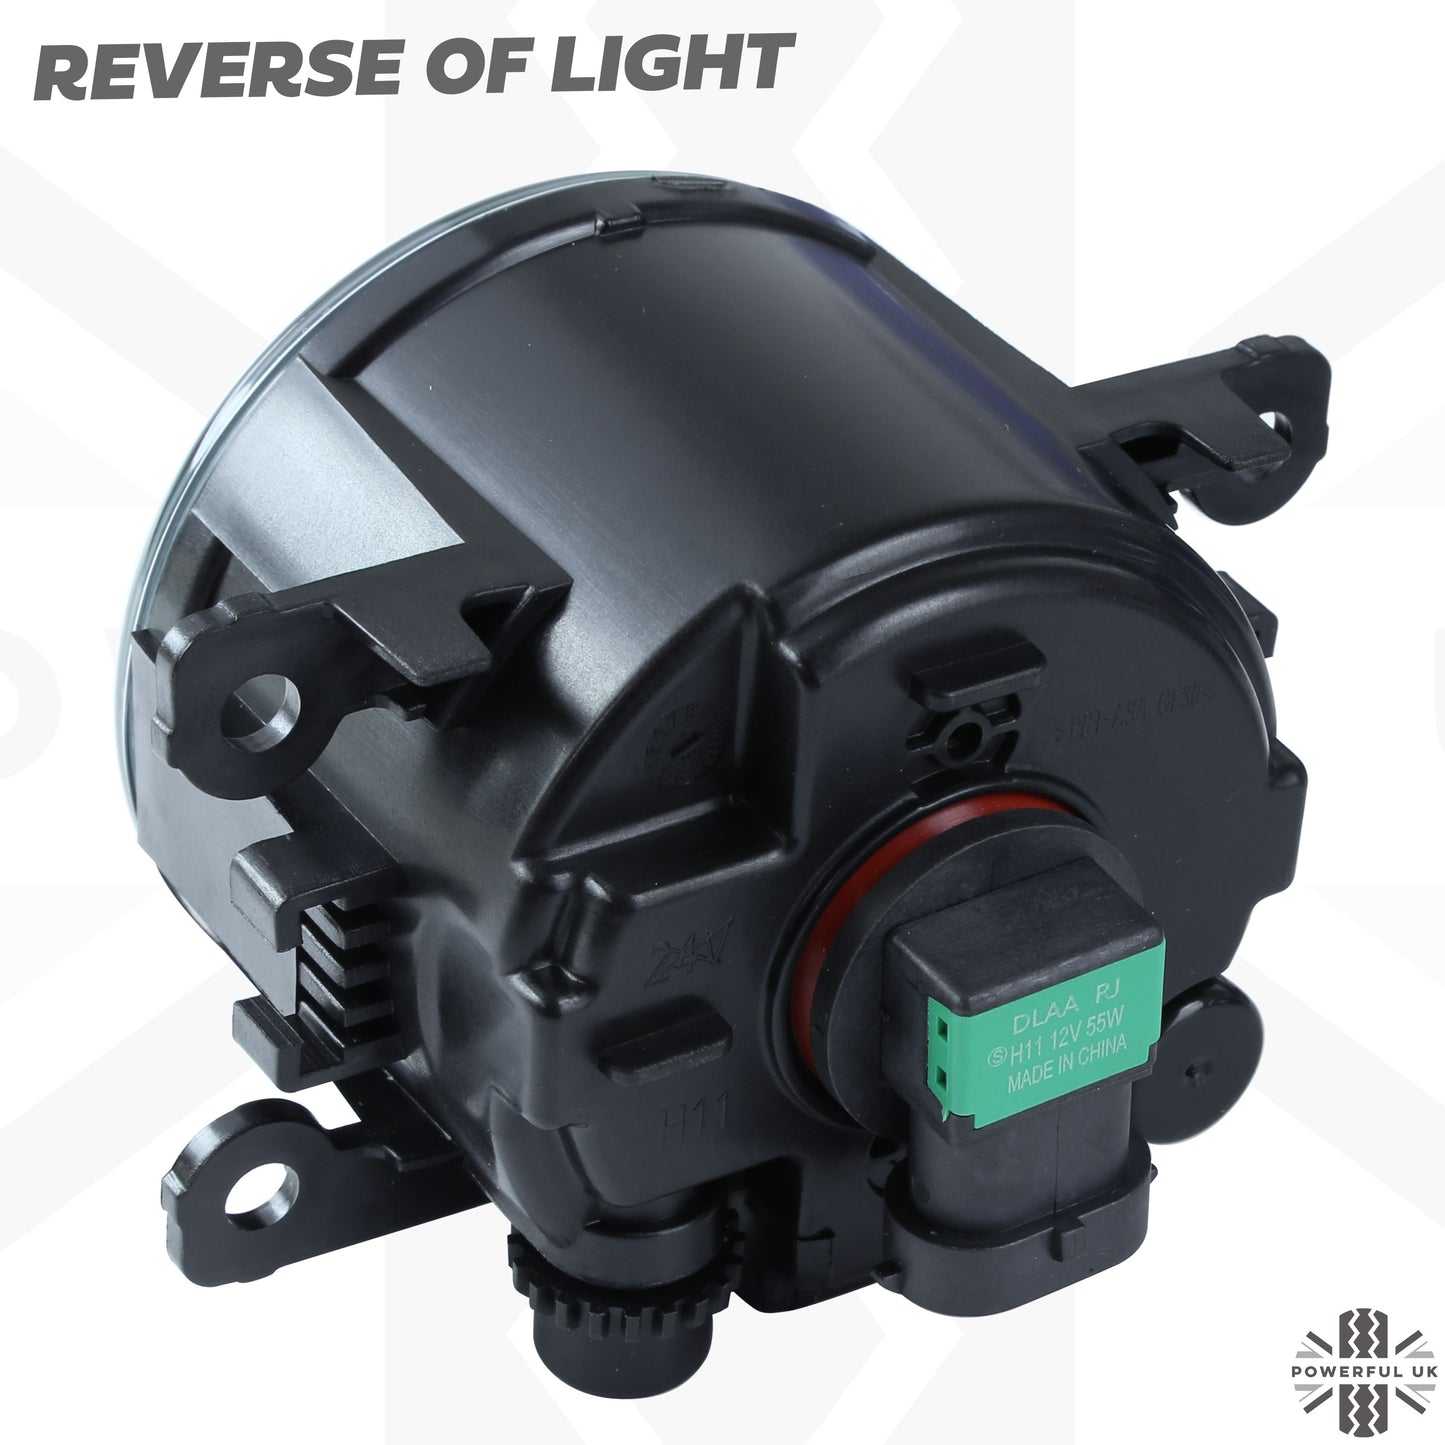 Fog Light Kit for Ford Ranger T7 2016-19